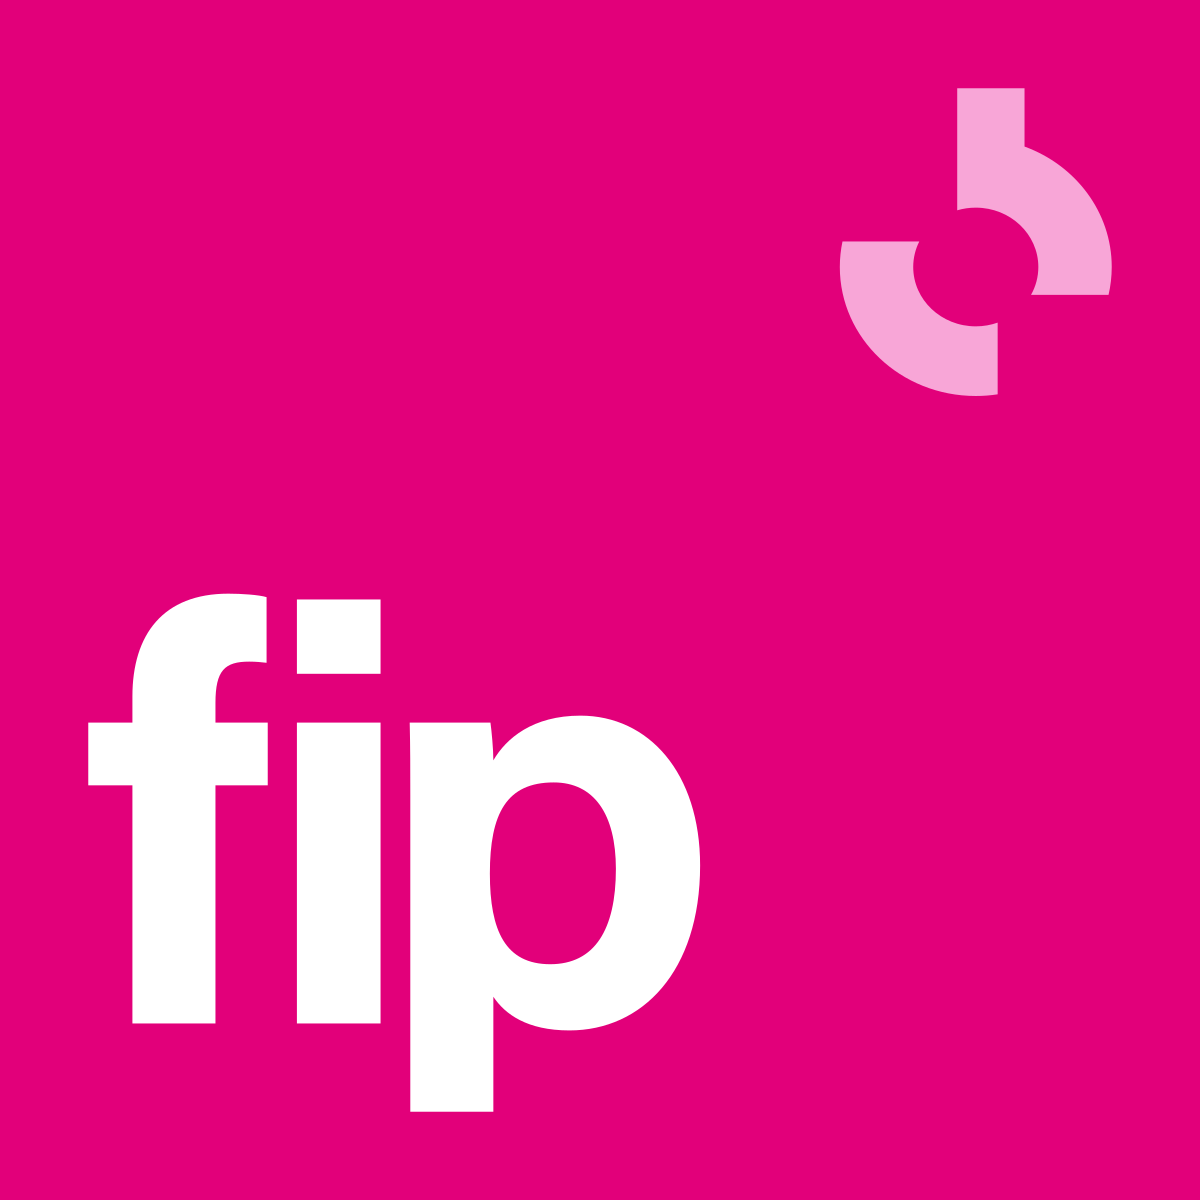 FIP (radio station) - Wikipedia